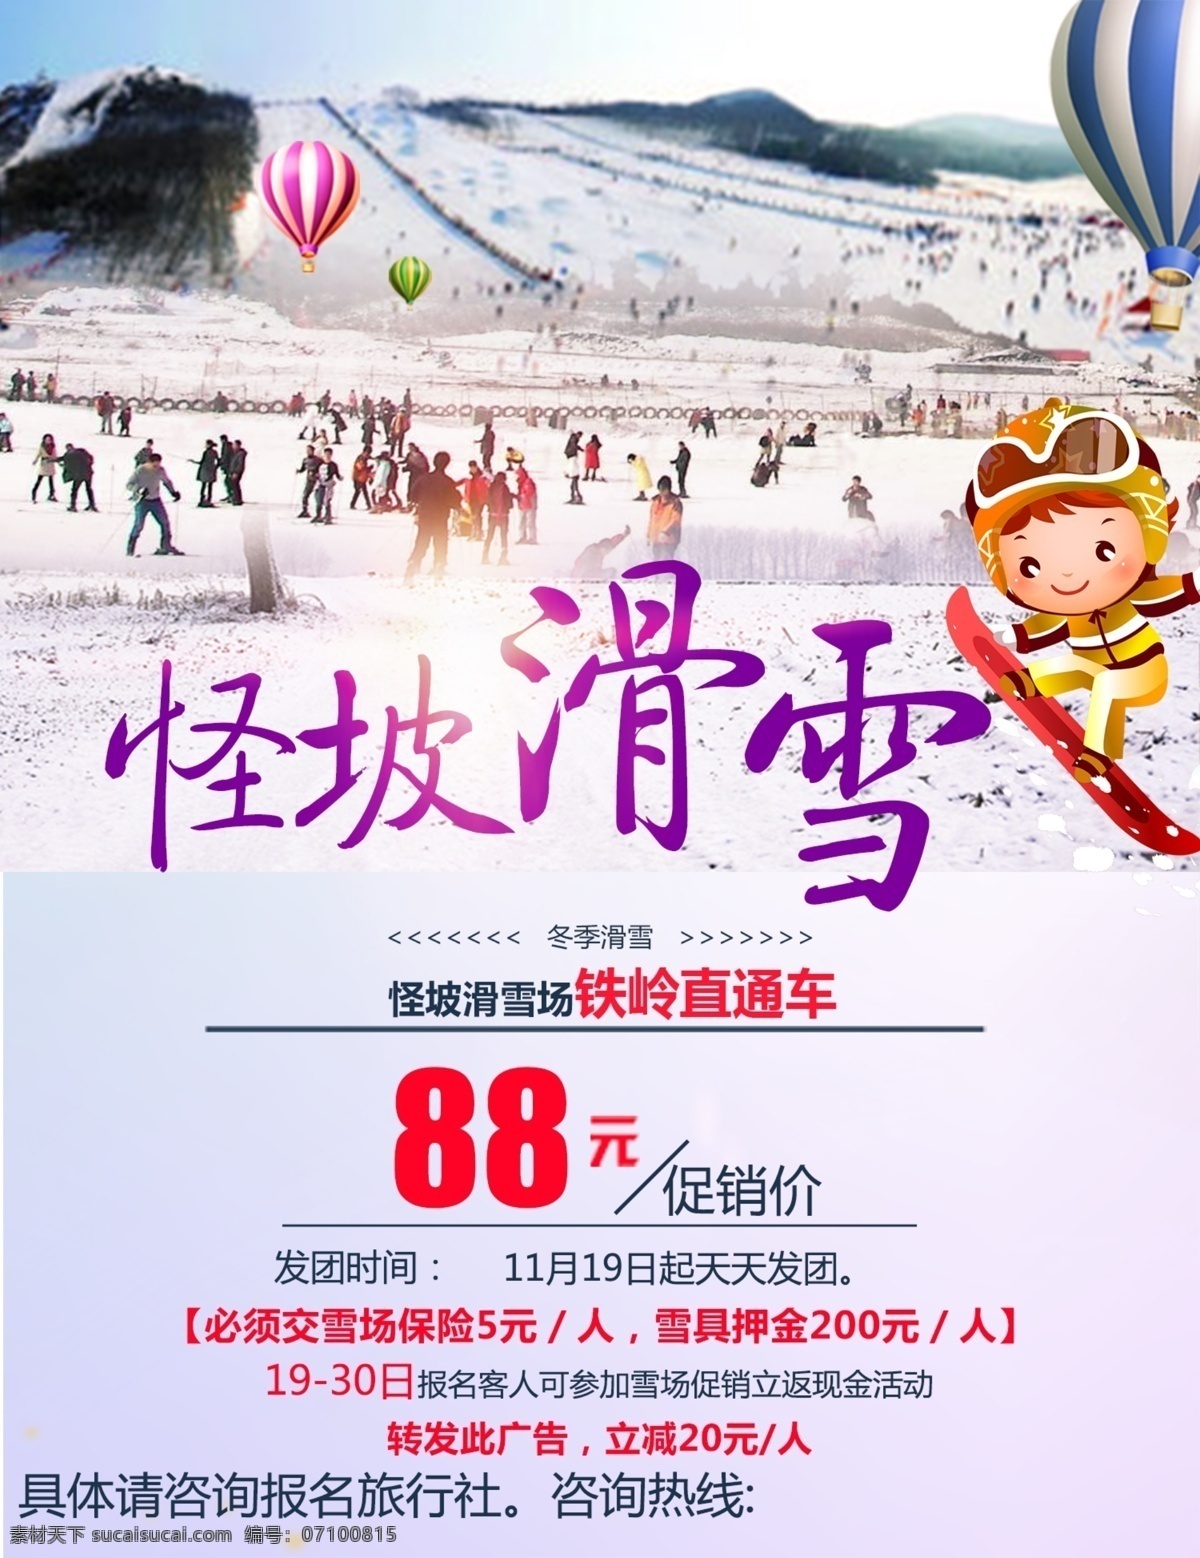 冬季 滑雪 宣传单 旅游宣传册 冬季滑雪 滑雪海报